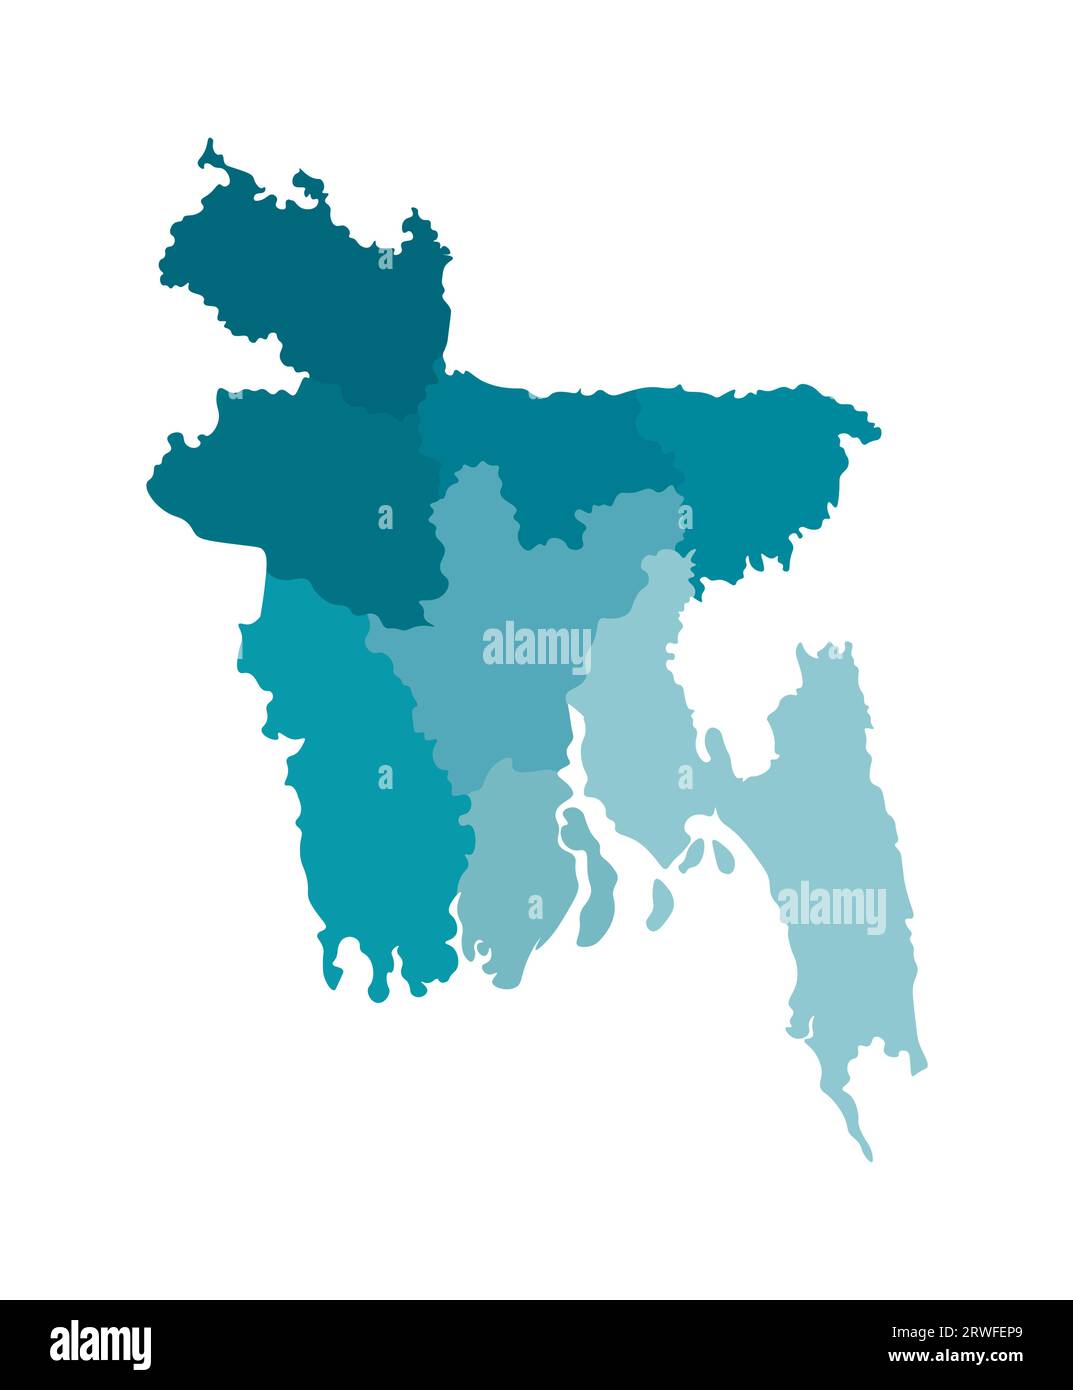 Vektorisolierte Darstellung einer vereinfachten Verwaltungskarte von Bangladesch. Grenzen der Regionen. Farbenfrohe, khakifarbene Silhouetten. Stock Vektor